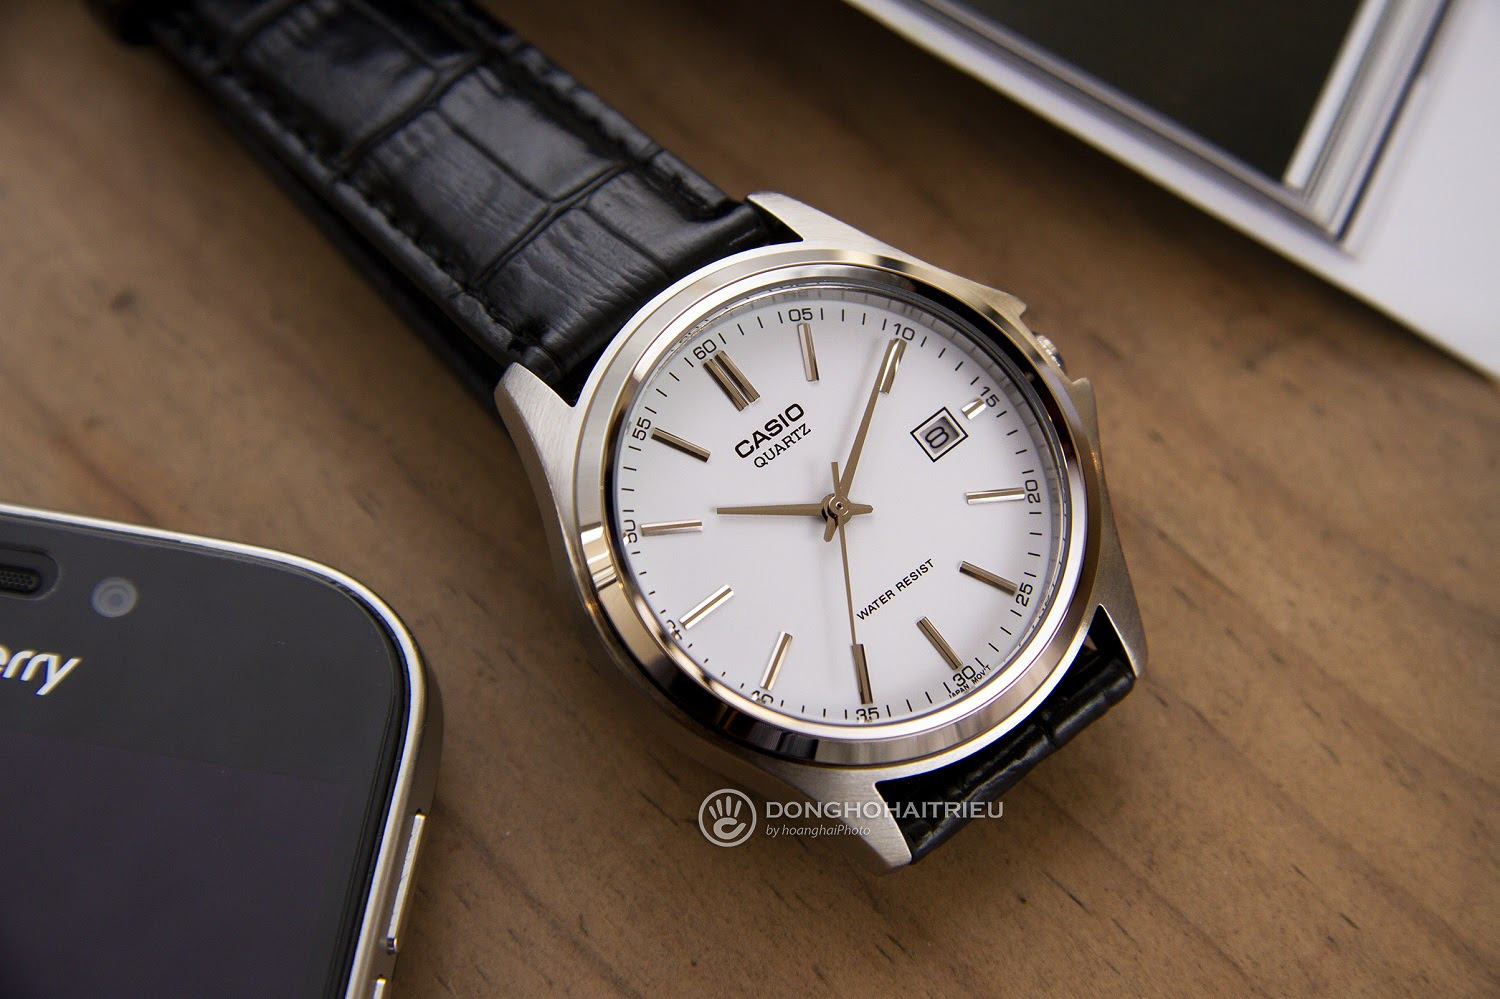 TOP mẫu đồng hồ nam giá dưới 1 triệu bán chạy hiện nay - Ảnh 1.